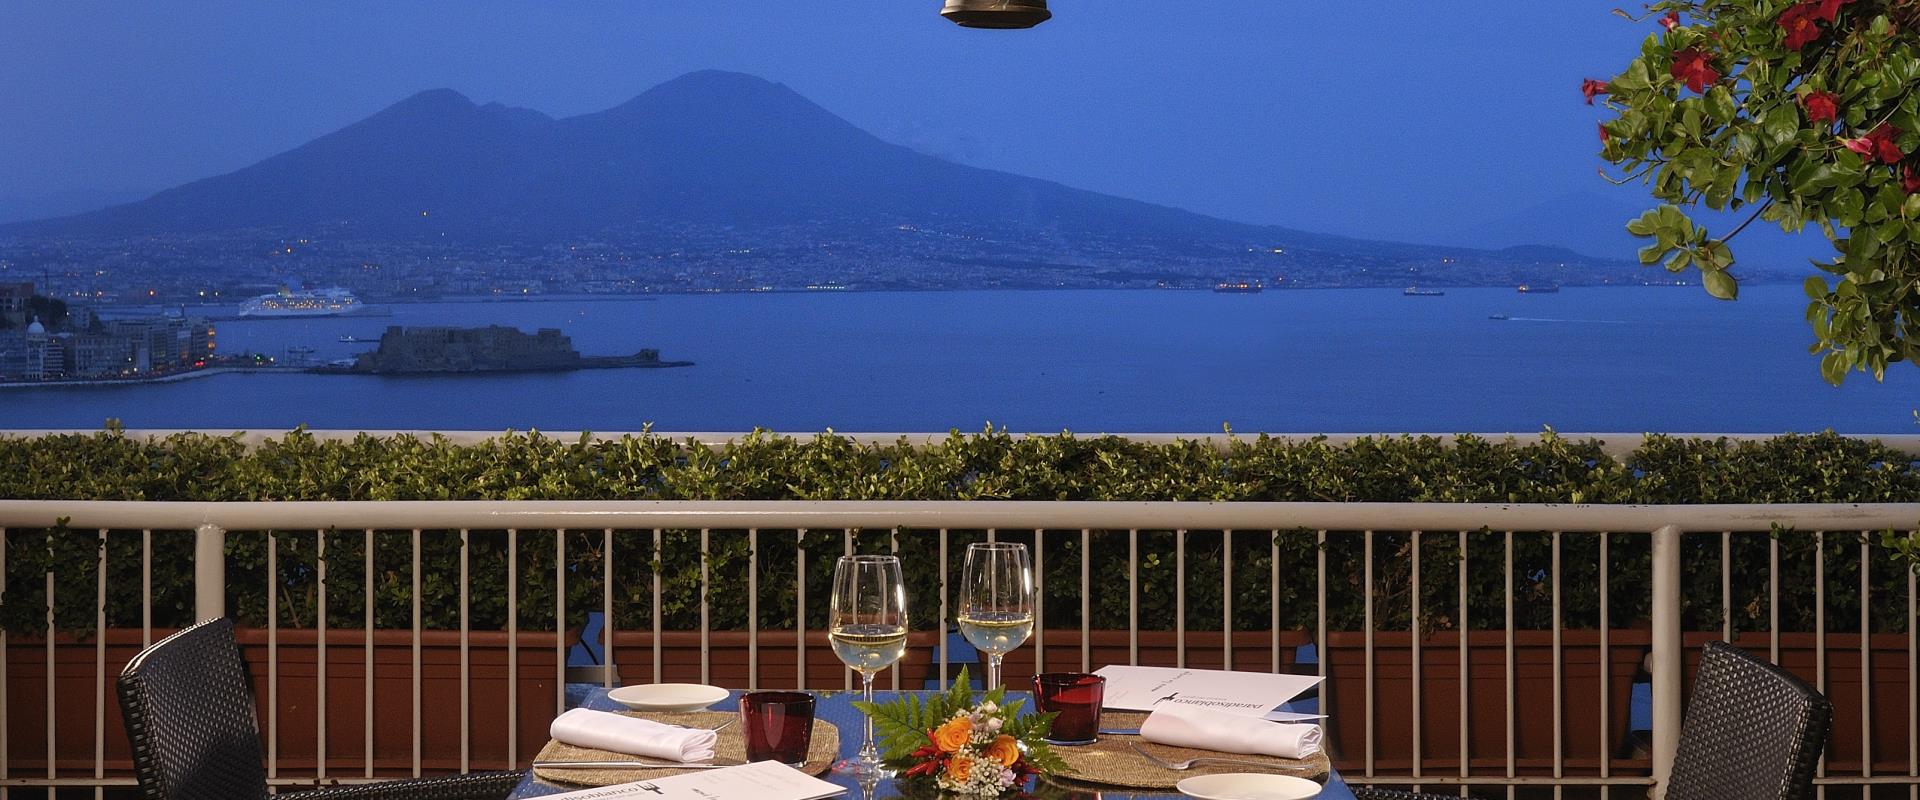 Jantar romântico no Golfo de Nápoles